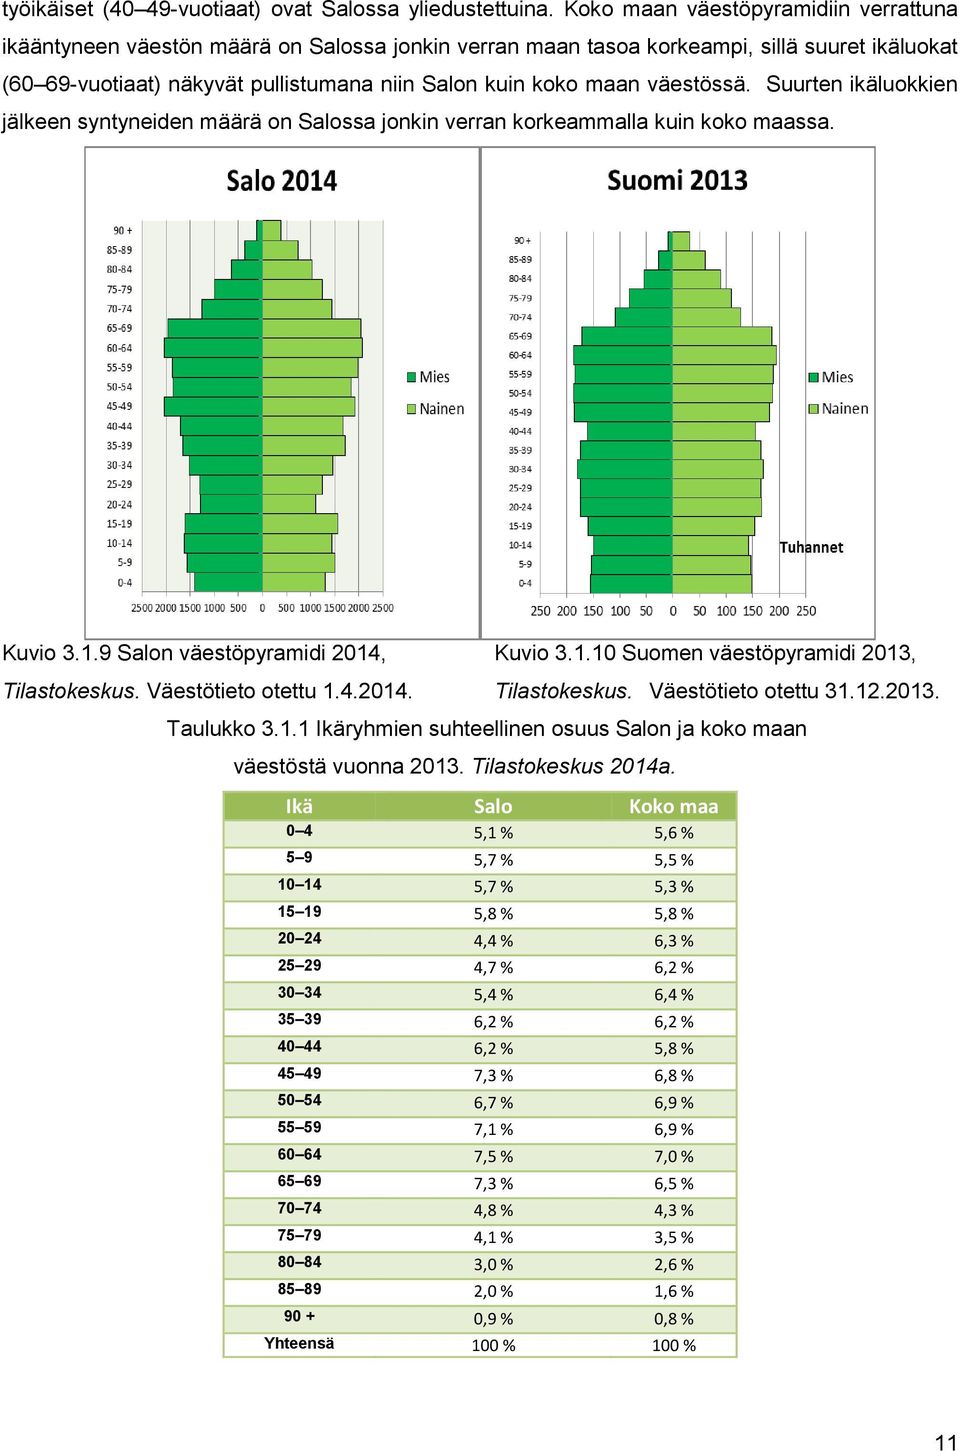 väestössä. Suurten ikäluokkien jälkeen syntyneiden määrä on Salossa jonkin verran korkeammalla kuin koko maassa. Kuvio 3.1.9 Salon väestöpyramidi 2014, Kuvio 3.1.10 Suomen väestöpyramidi 2013, Tilastokeskus.